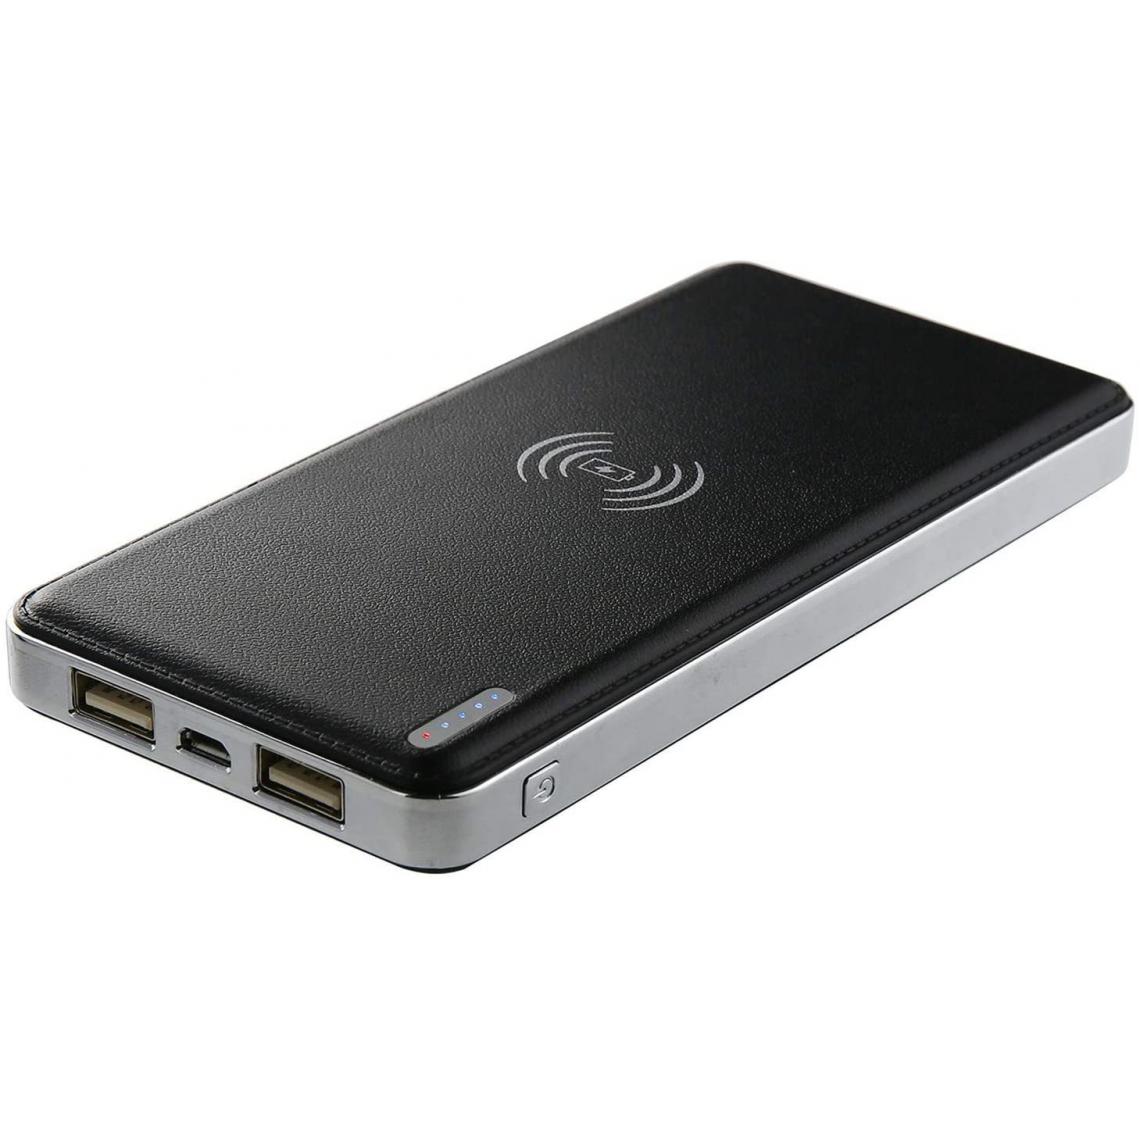 Chrono - Trésor de Charge Sans Fil, Capacité de Charge Sans Fil USB de Grande Capacité de 10 000 mAh(Noir) - Chargeur secteur téléphone